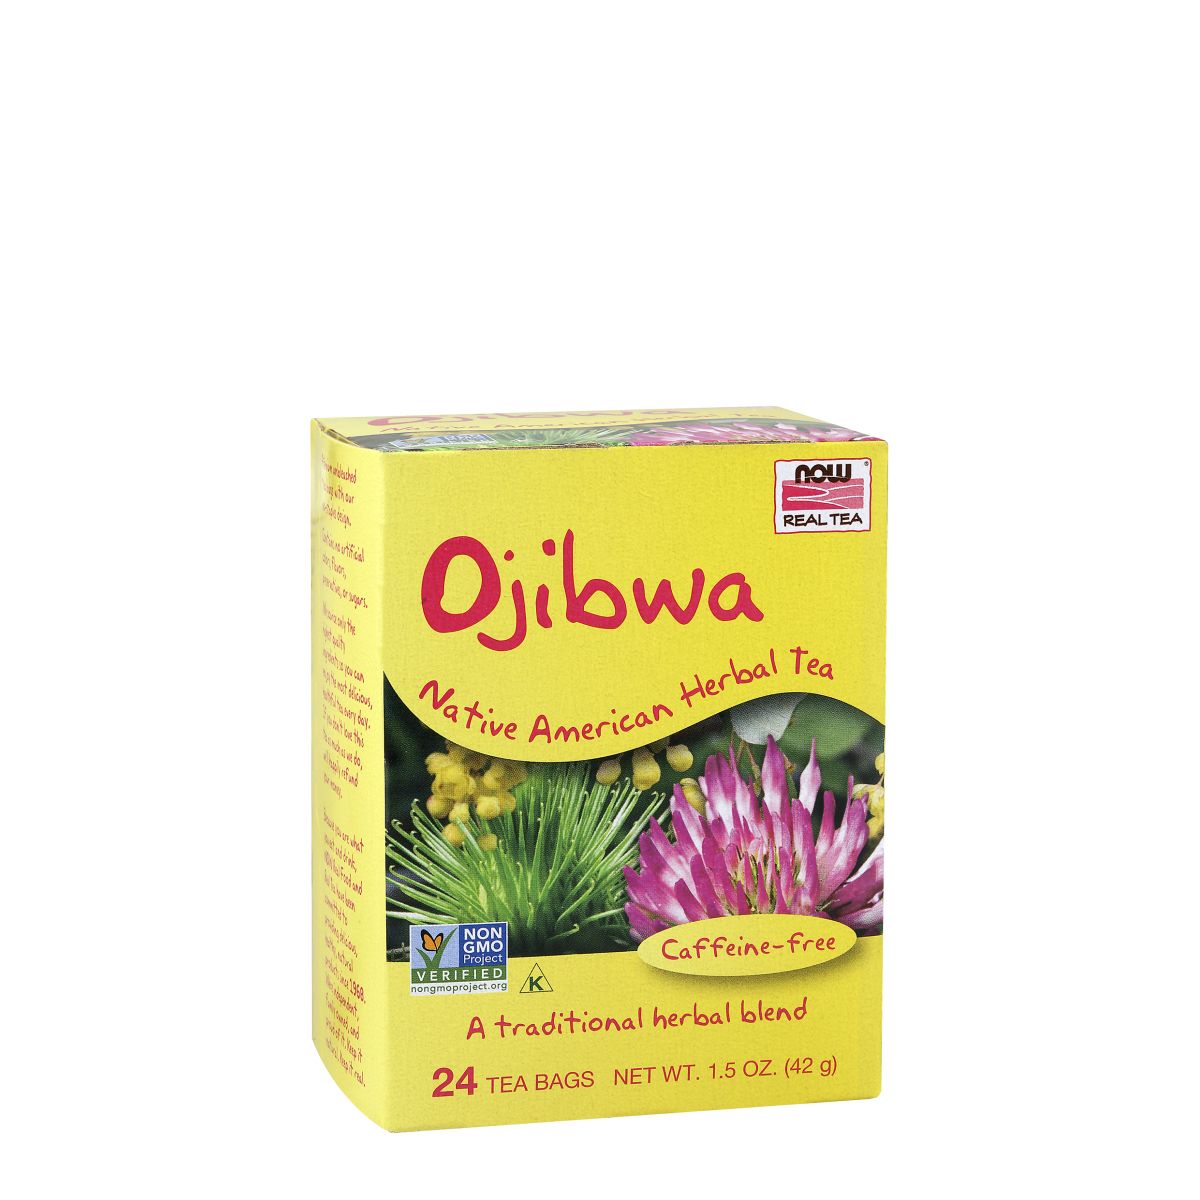 Gyulladáscsökkentő Ojibwa indián gyógytea, Now Ojibwa Tea, 24 adag, 42 g